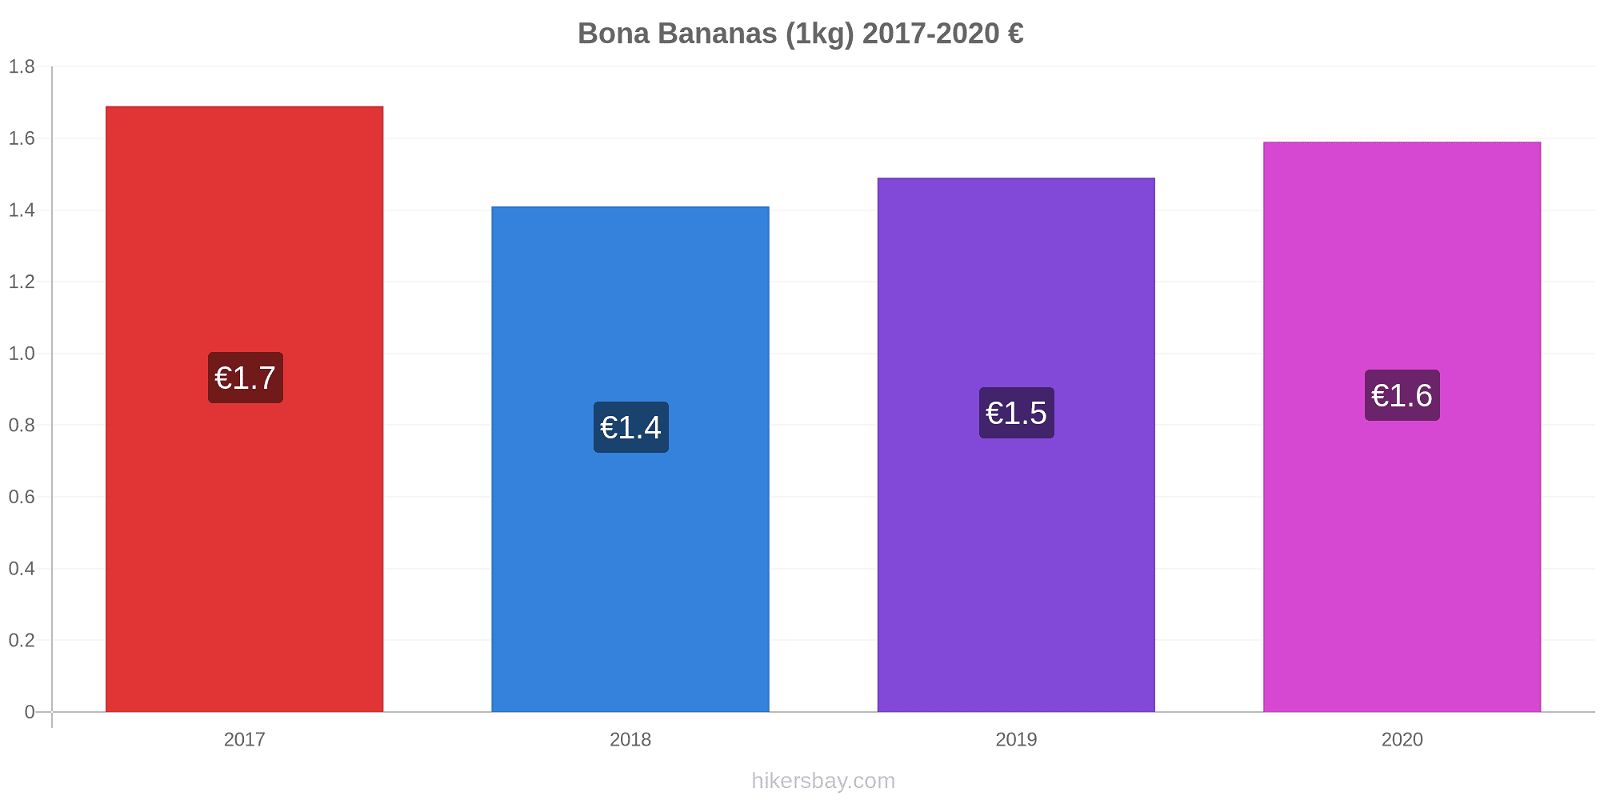 Bona variação de preço Banana (1kg) hikersbay.com